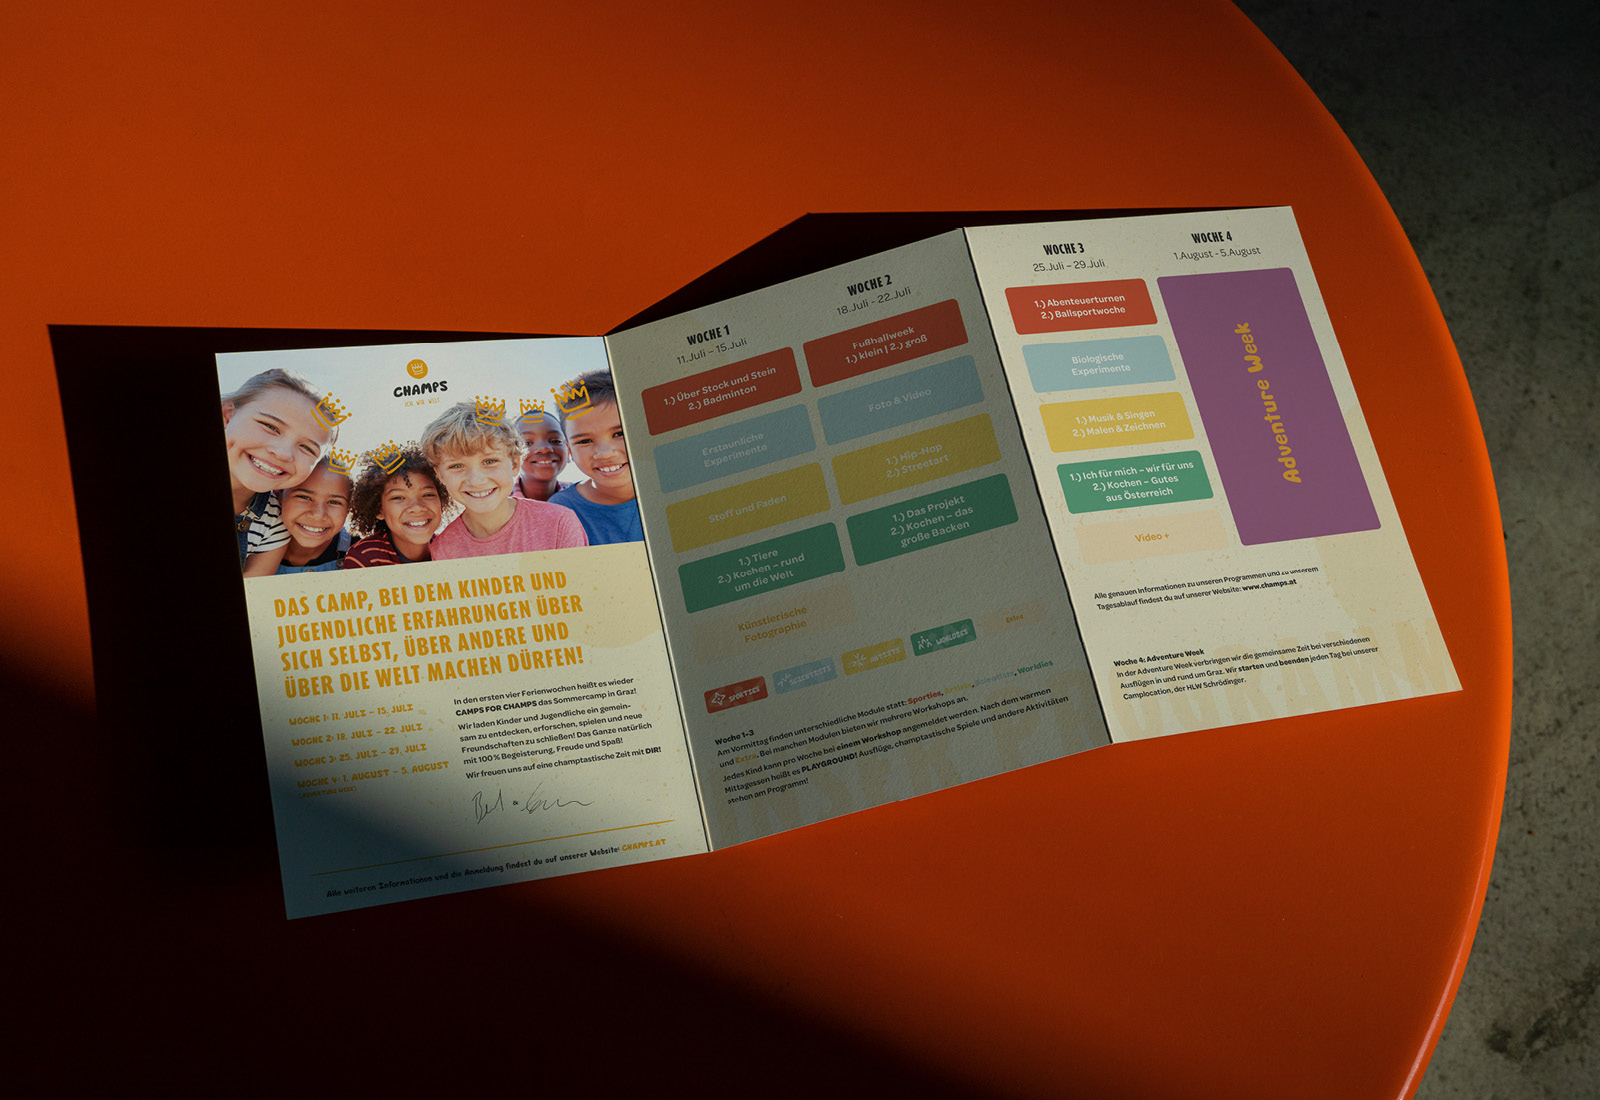 Eine dreifach gefaltete Broschüre, die Champs zeigt und Kinder zeigt, die auf einem orangefarbenen Tisch sitzen.